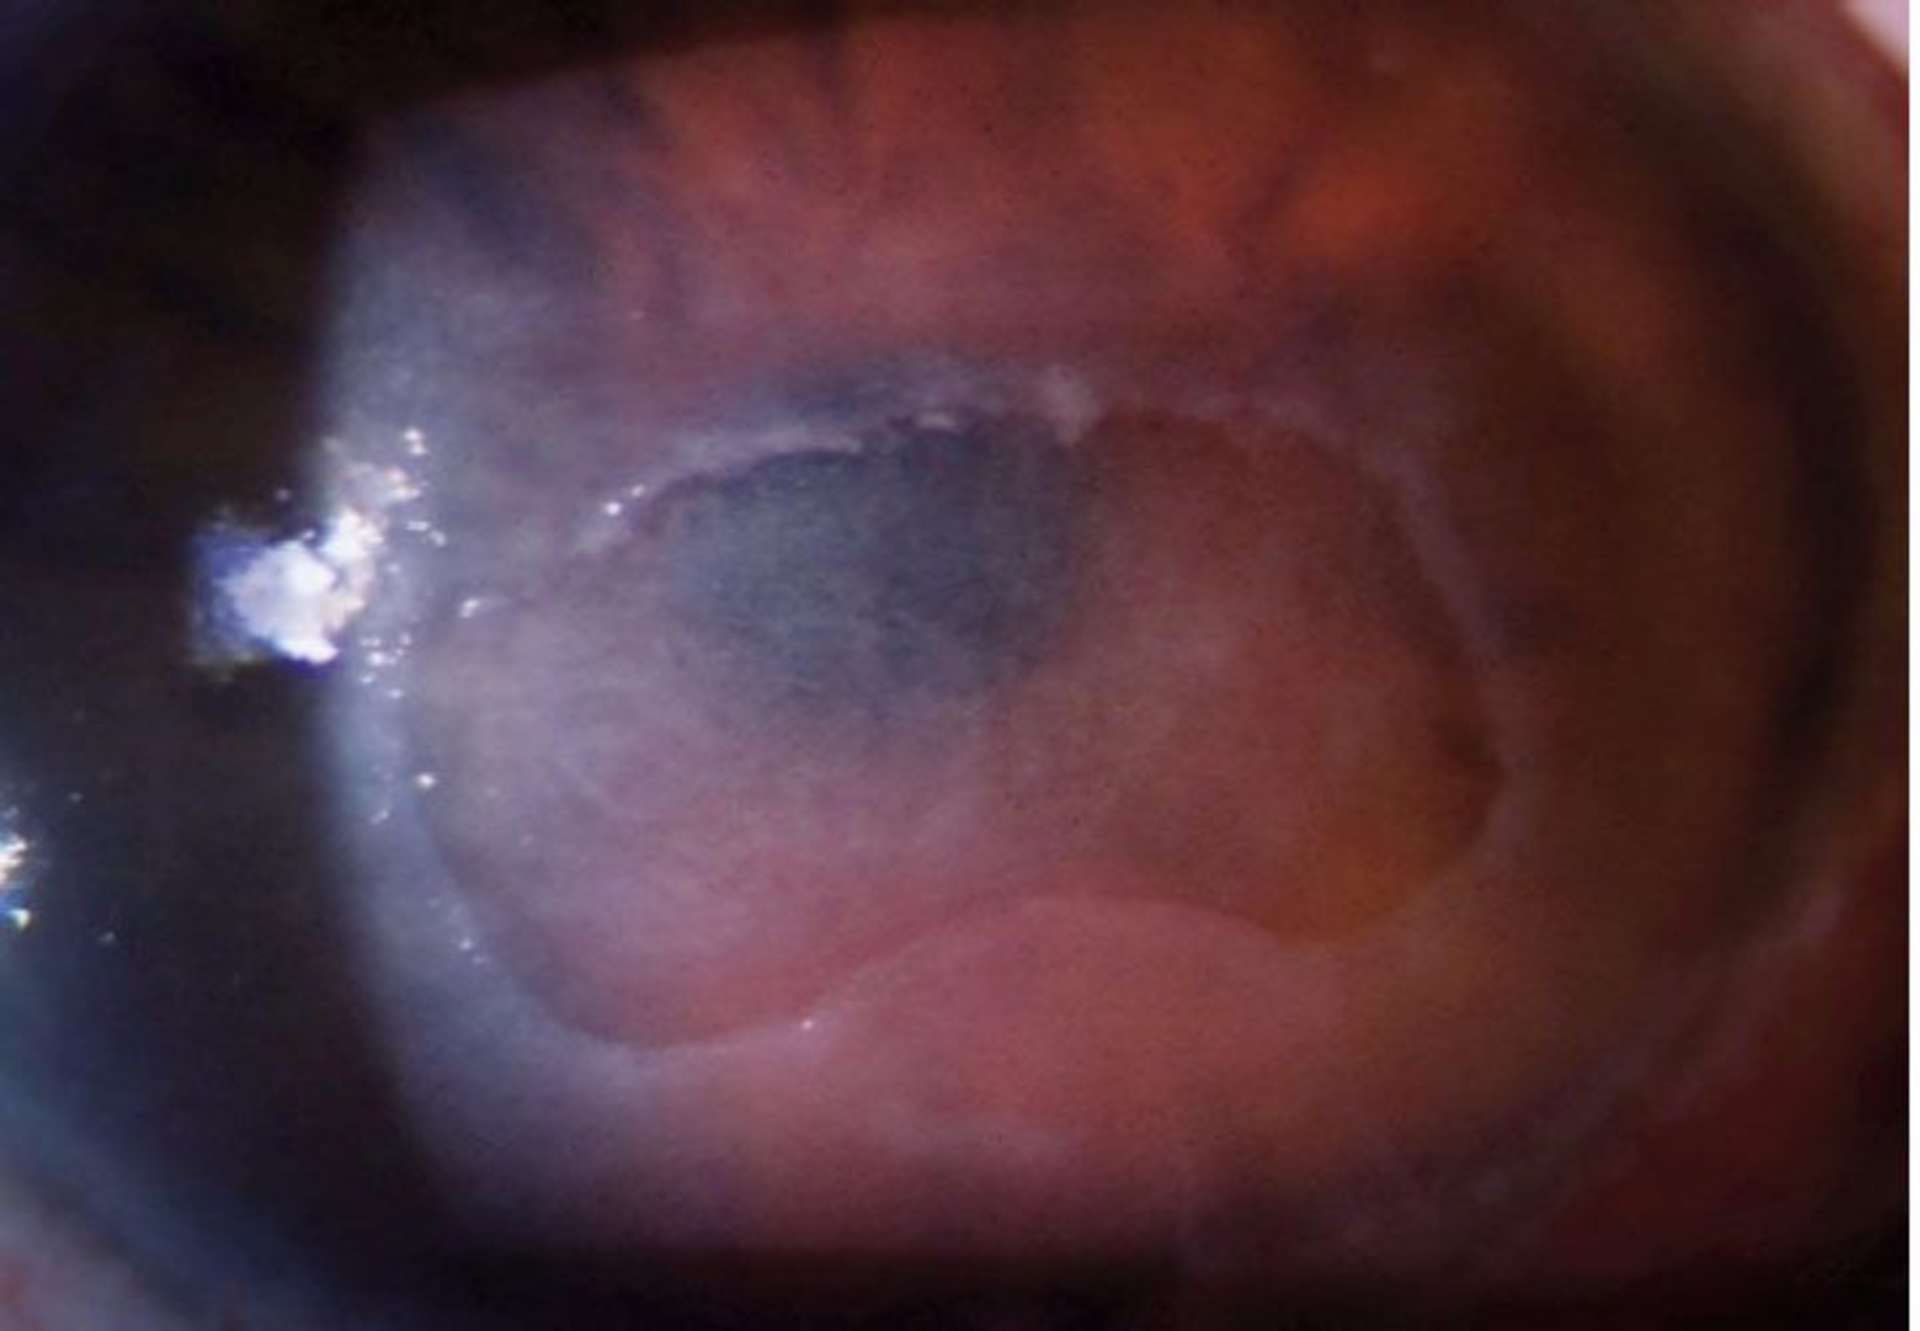 Photographie à la lampe à fente d’un ulcère cornéen d’origine neurotrophique, stade 2 selon la classification de Mackie. Anesthésie cornéenne totale
